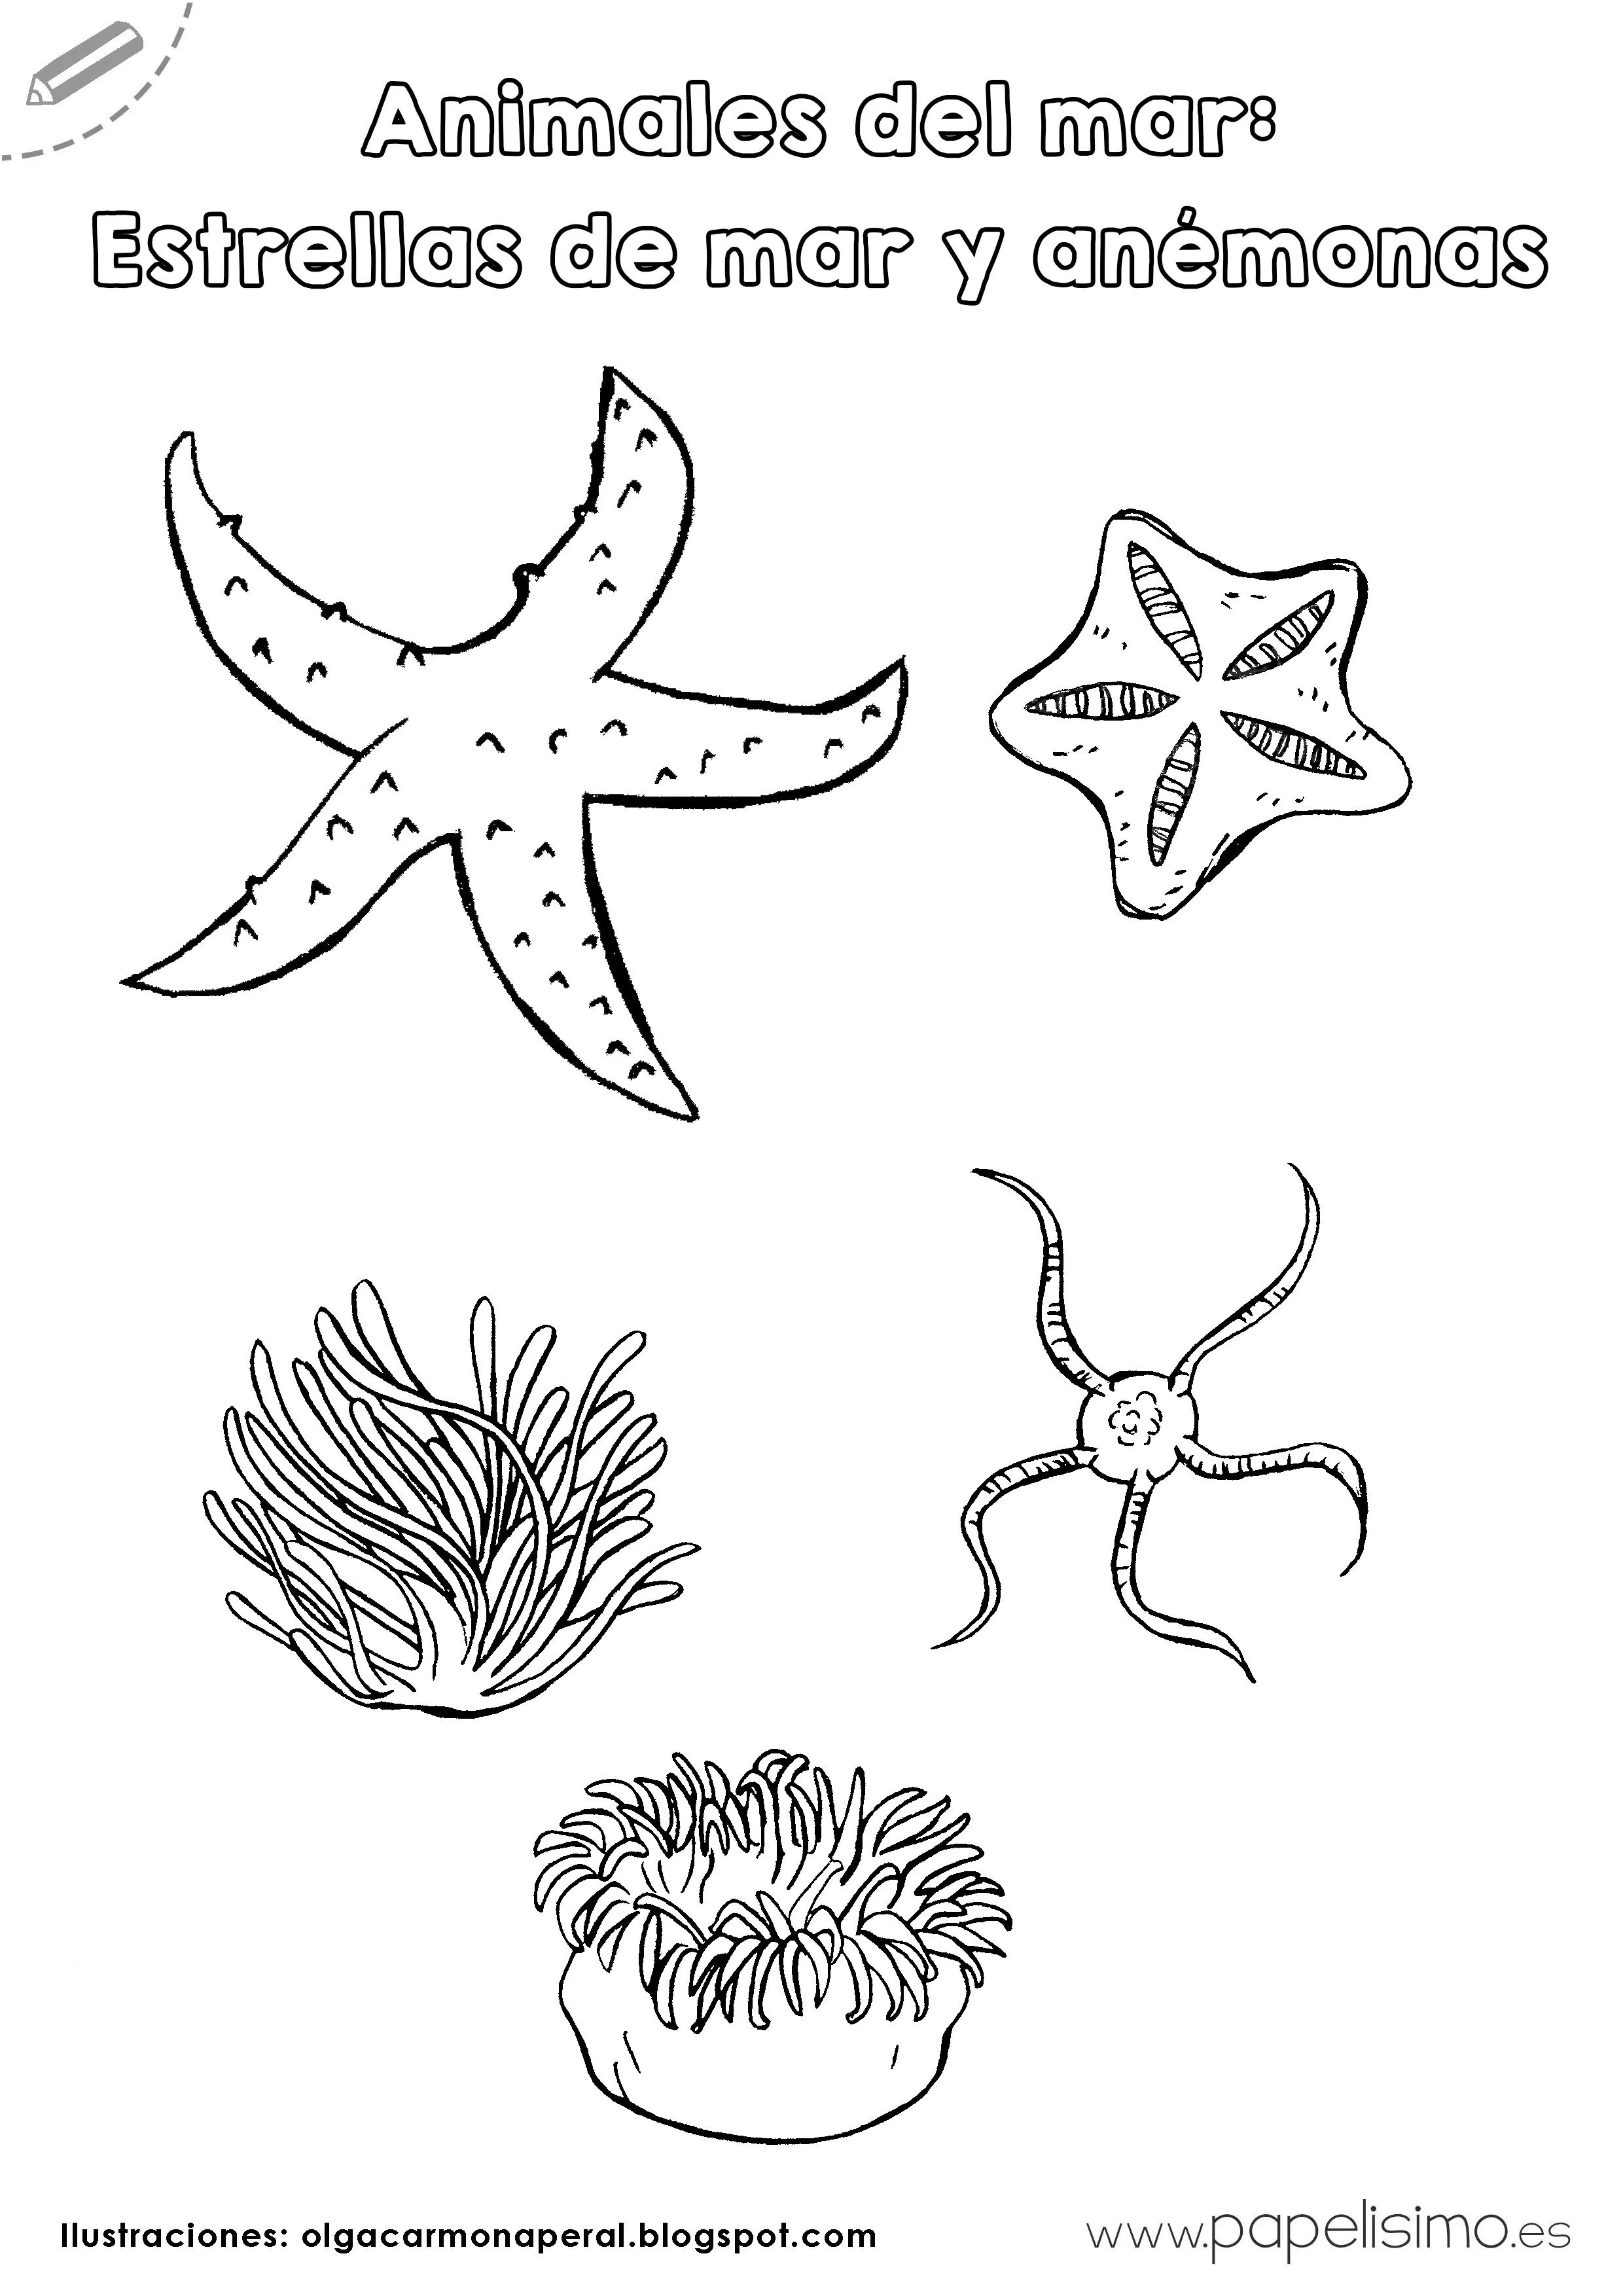 Animales del mar para imprimir y colorear | Papelisimo